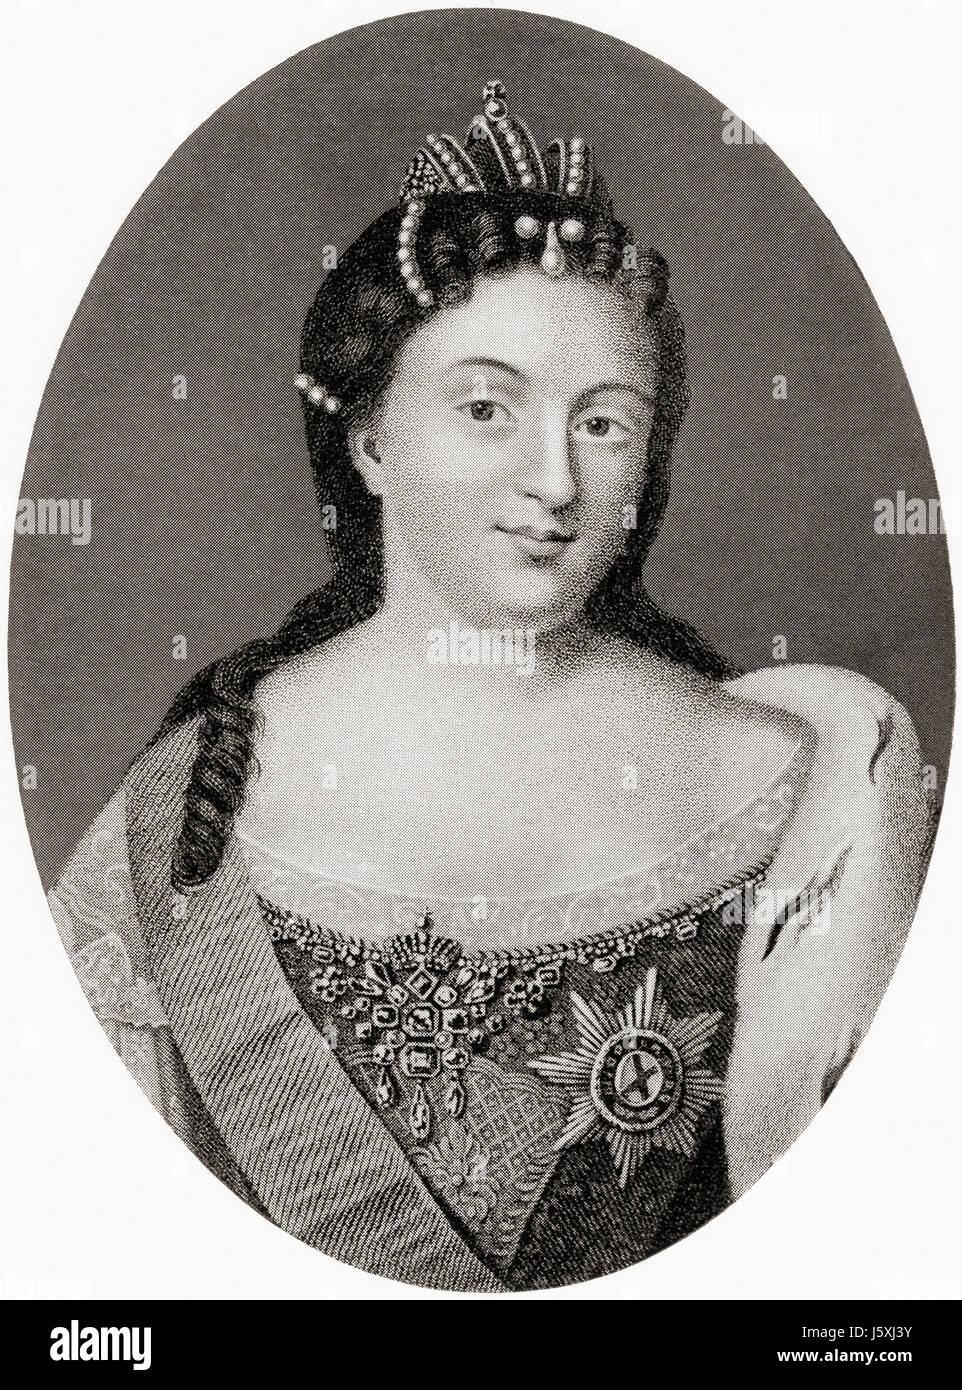 Anna Ioannovna, 1693 - 1740, anche ortografato Anna Ivanovna. Regent del ducato di Courland, 1711 - 1730 e poi imperatrice di Russia, 1730 a 1740. Da Hutchinson nella storia delle nazioni, pubblicato 1915. Foto Stock